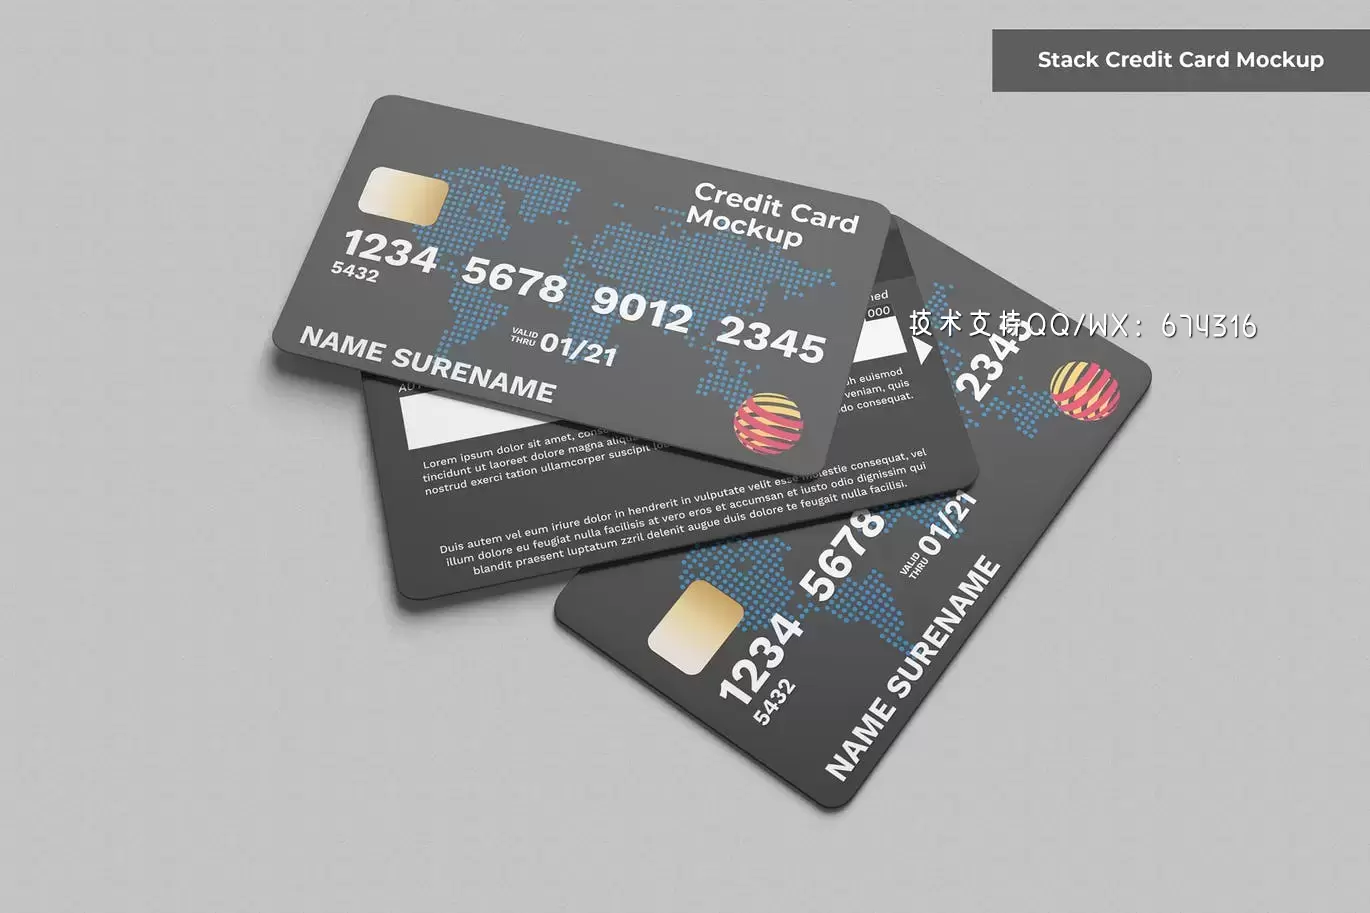 高端堆叠信用卡模型免费下载